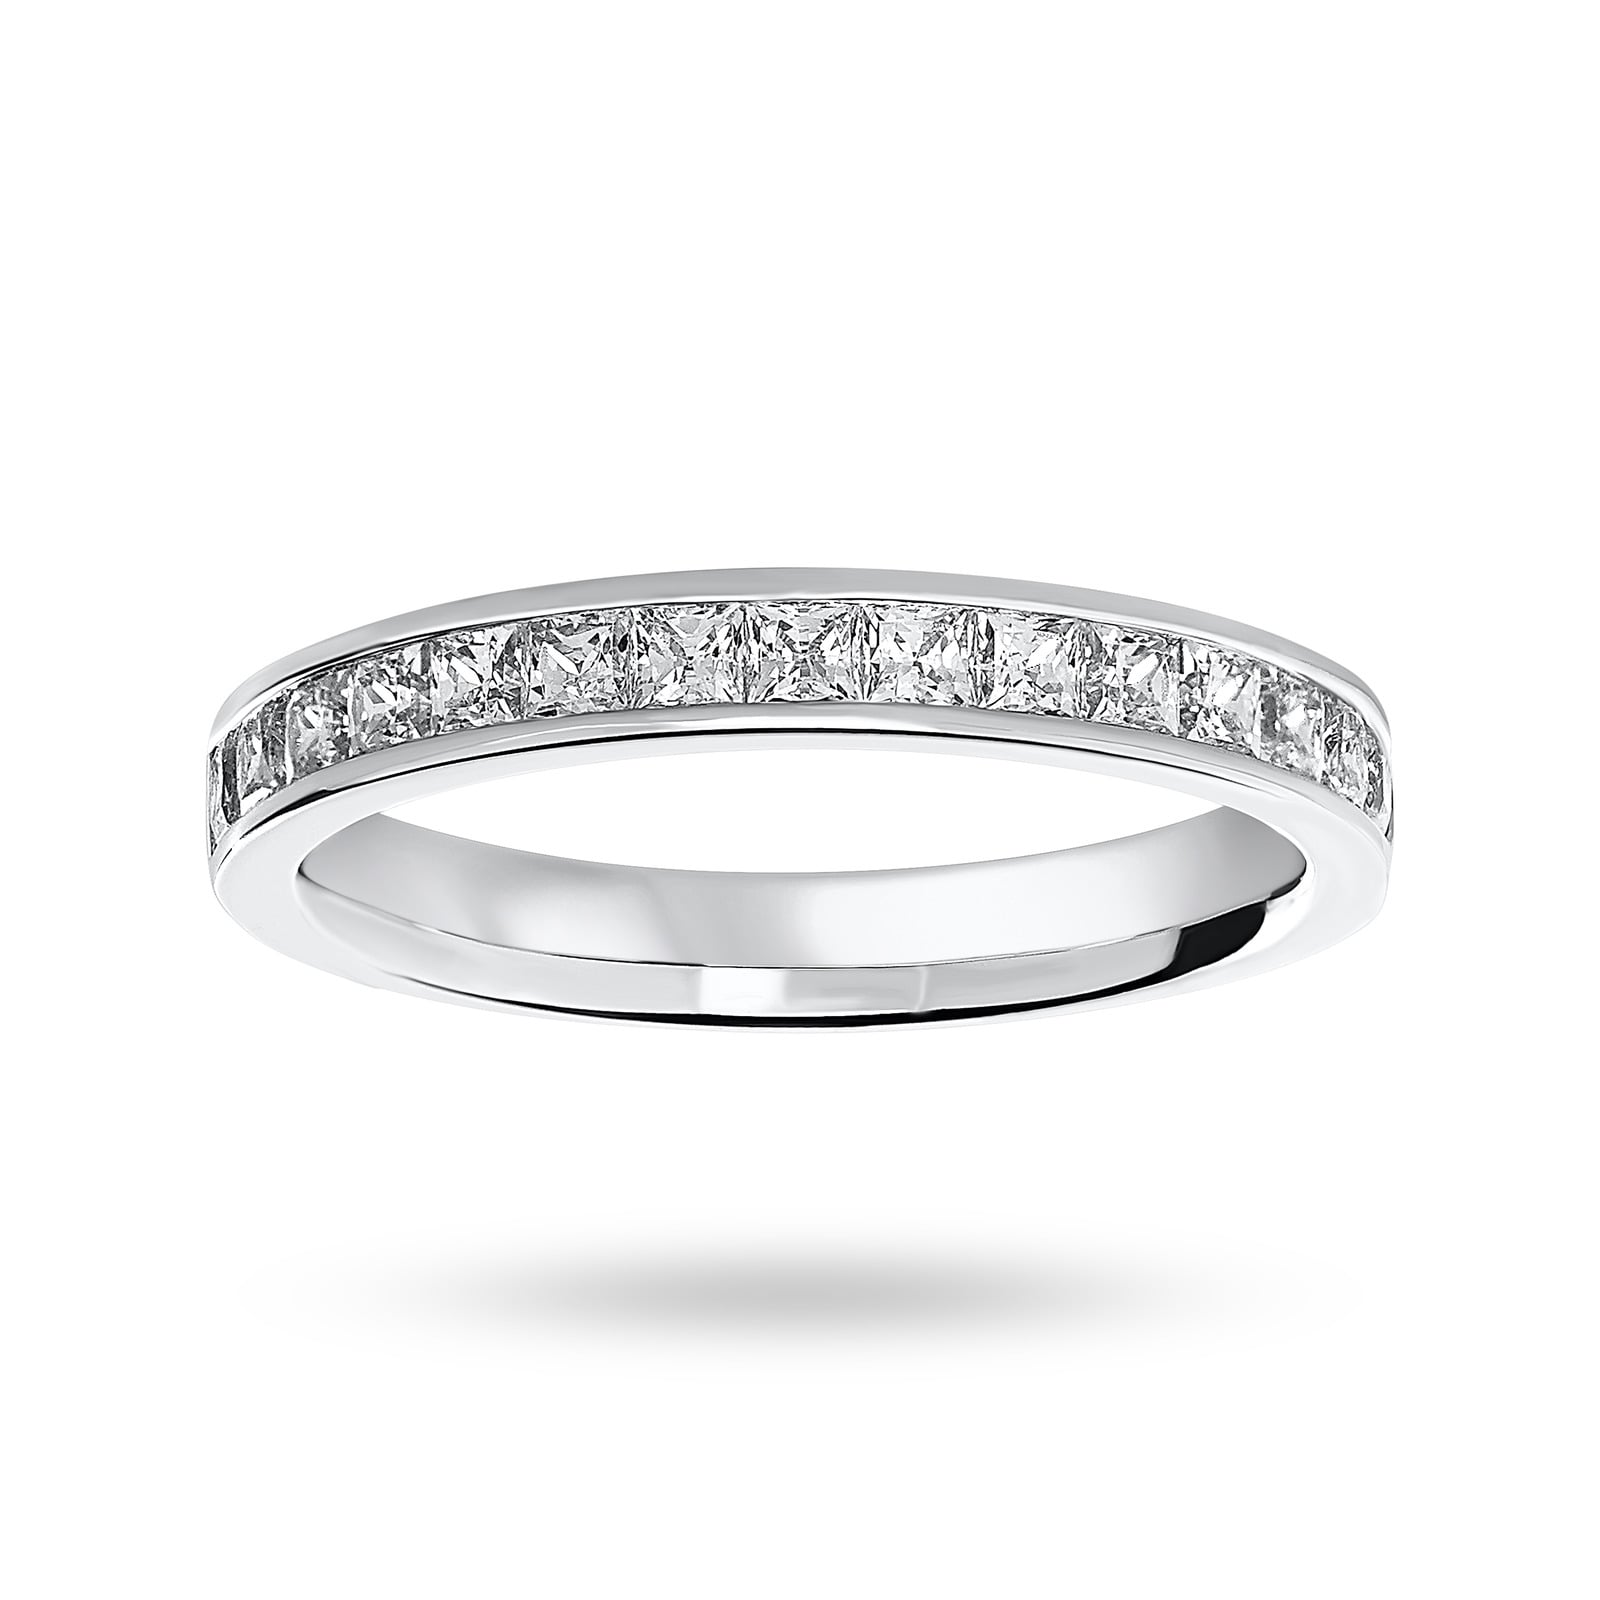 18 Carat White Gold 0.75 Carat Princess Cut Half Eternity Ring - Ring Size J